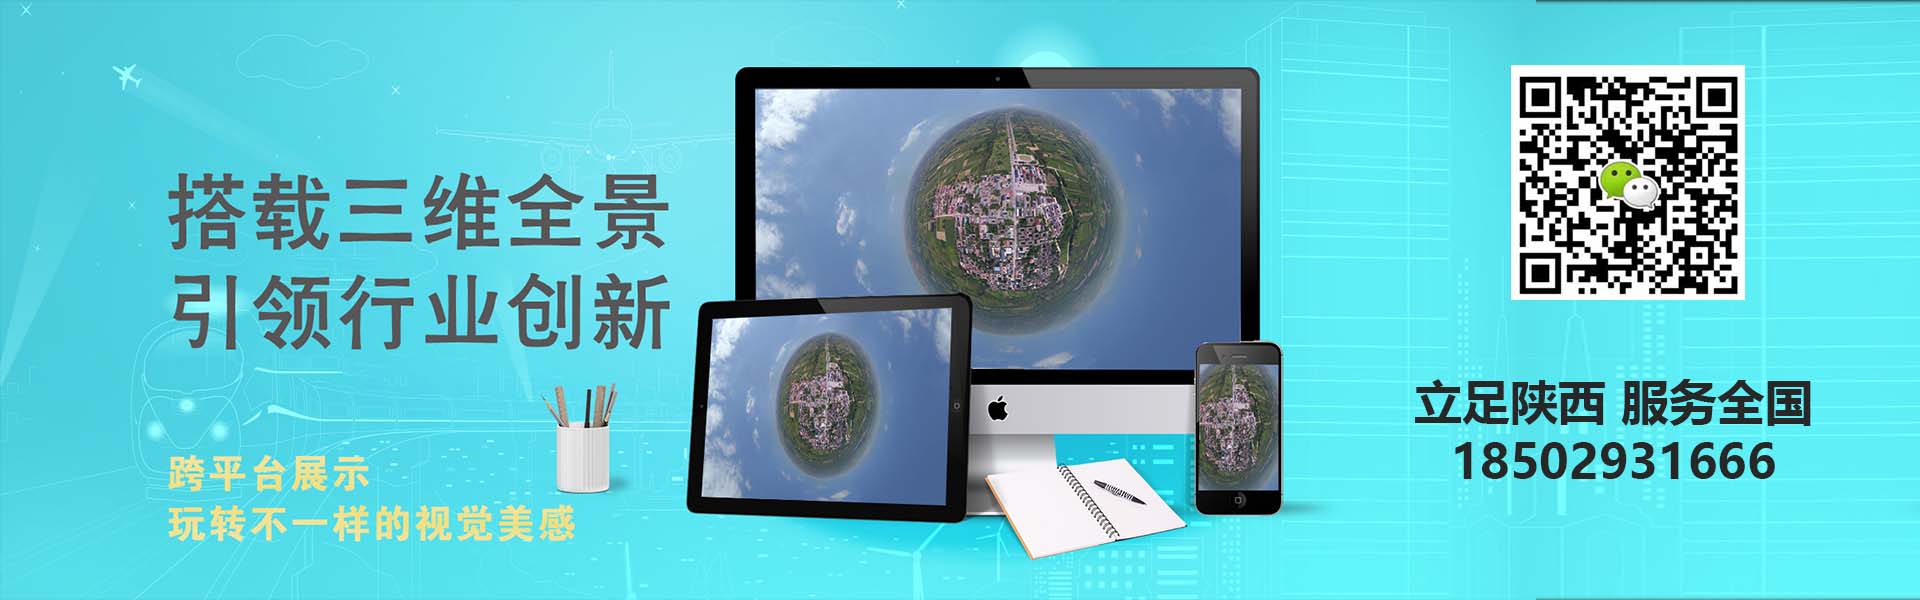 汤旺河如何制作一部三维建筑宣传片及其在工程施工中的应用